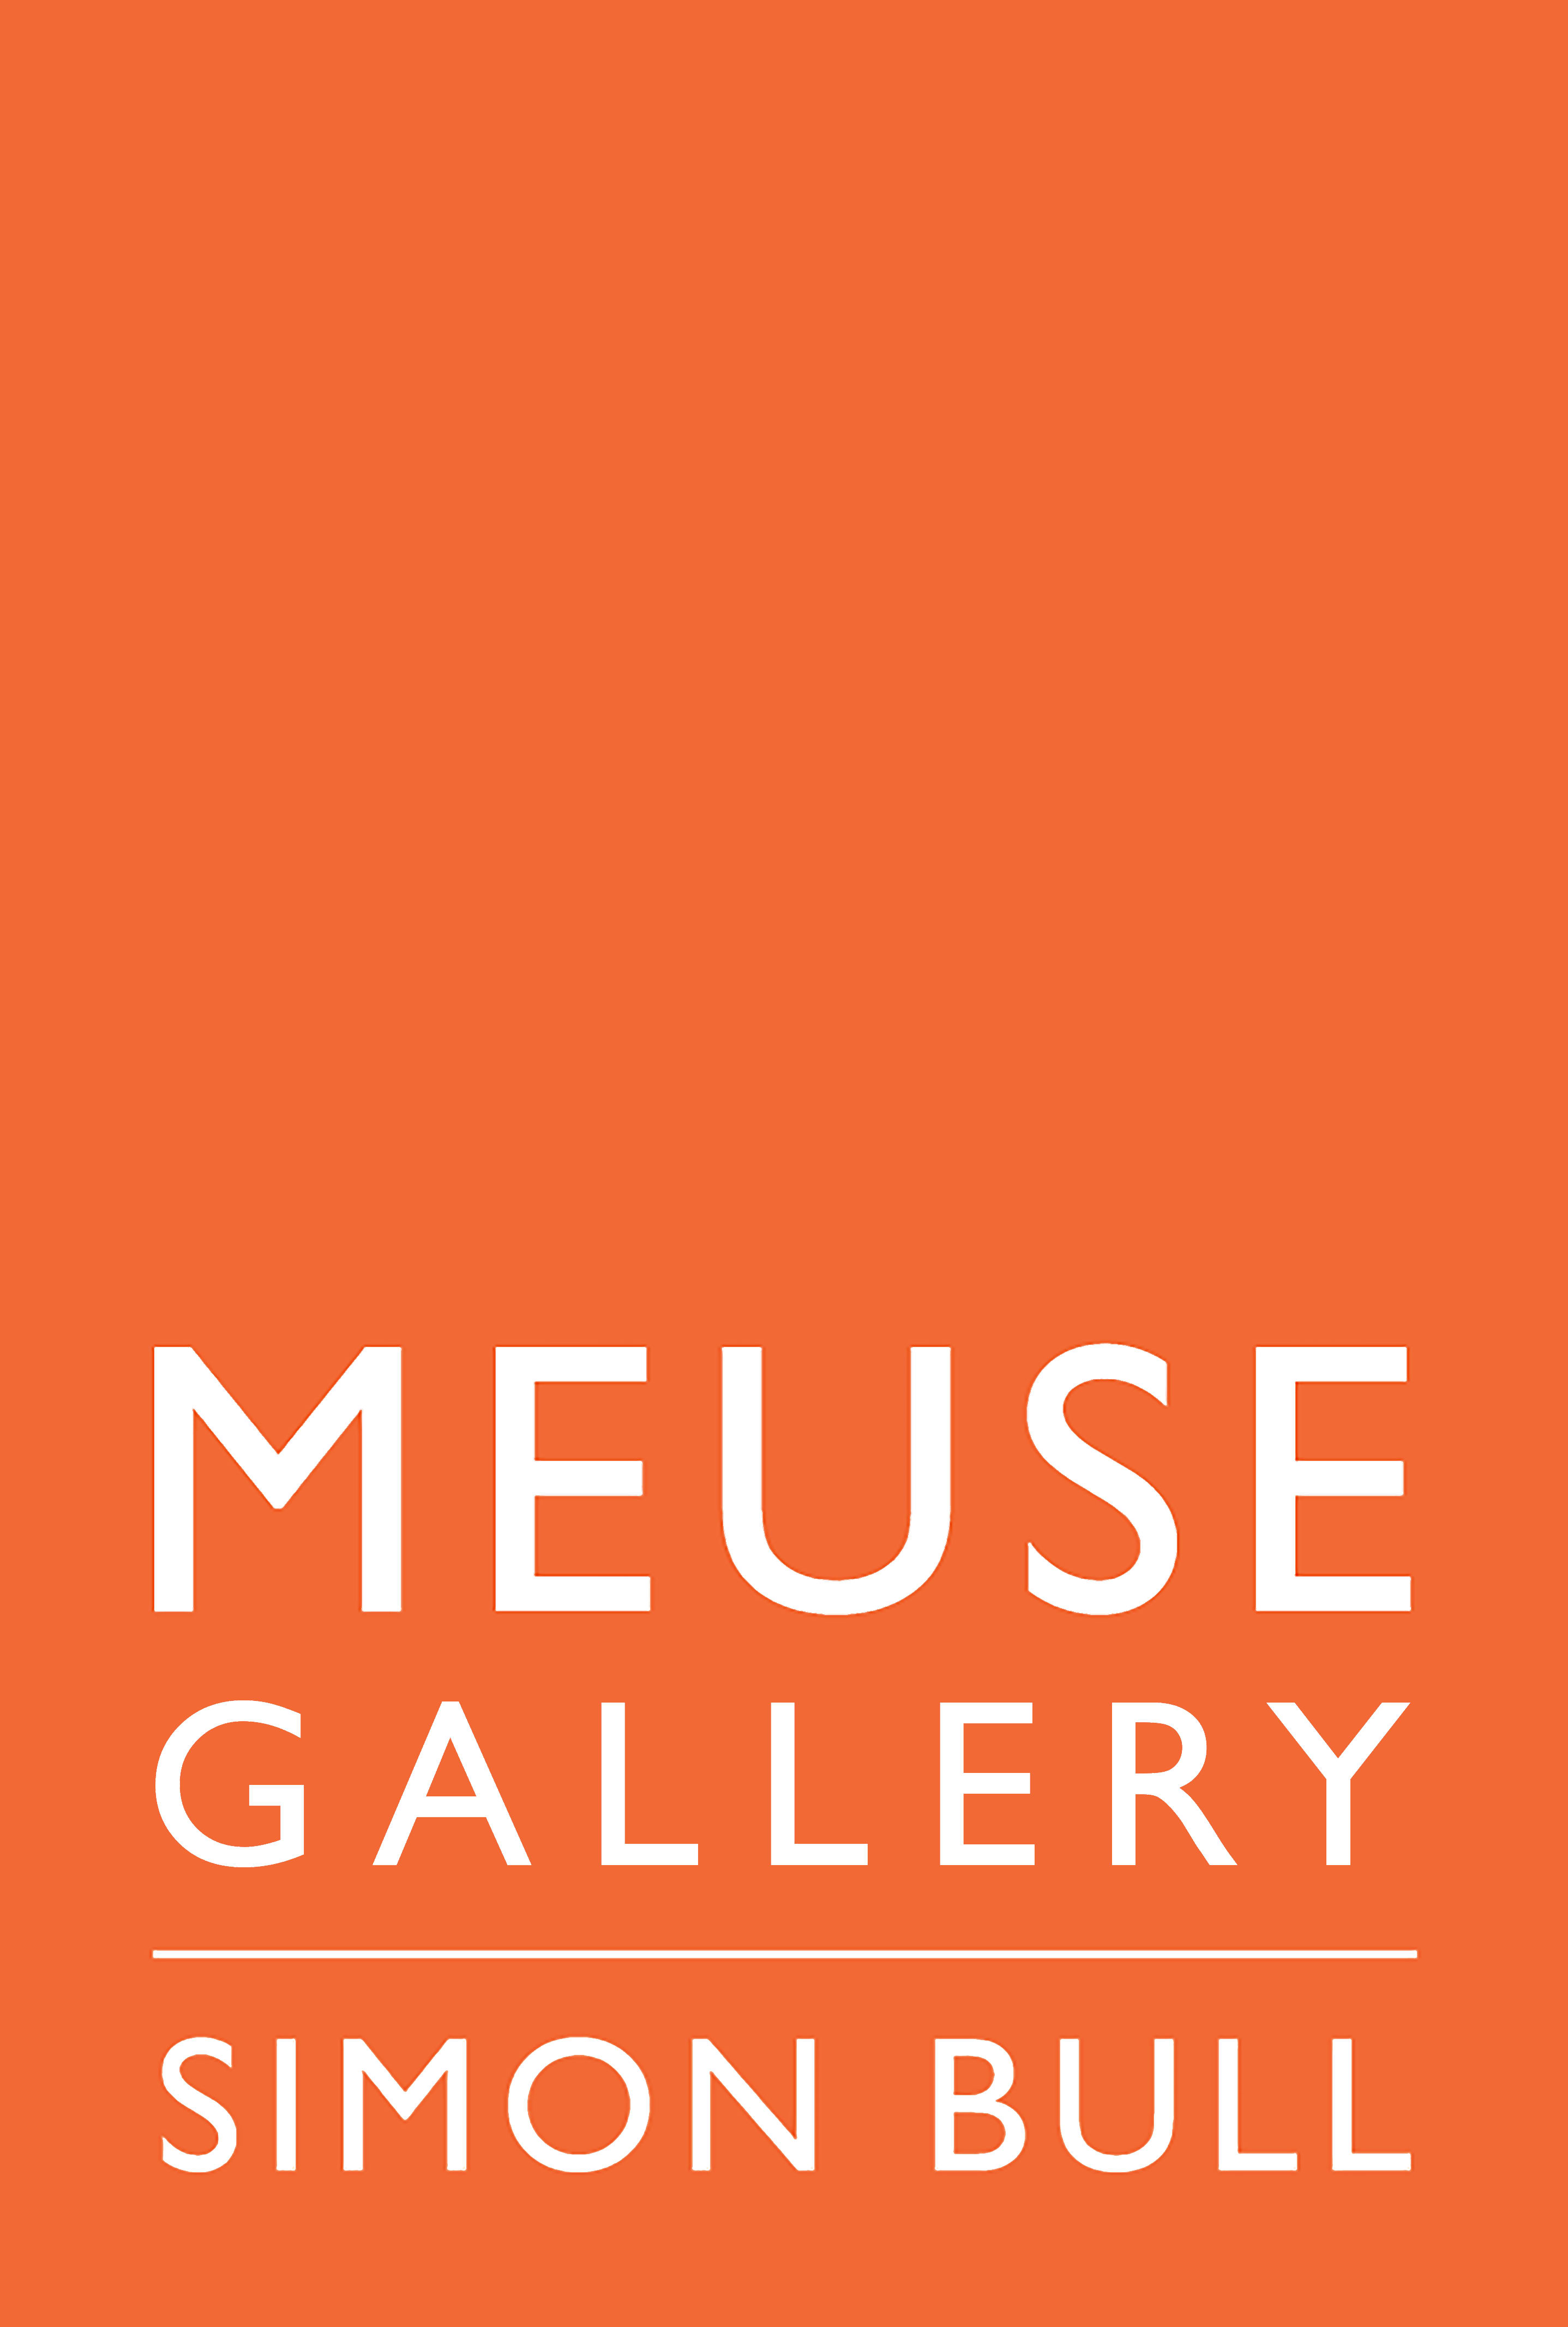 MEUSE Gallery company logo